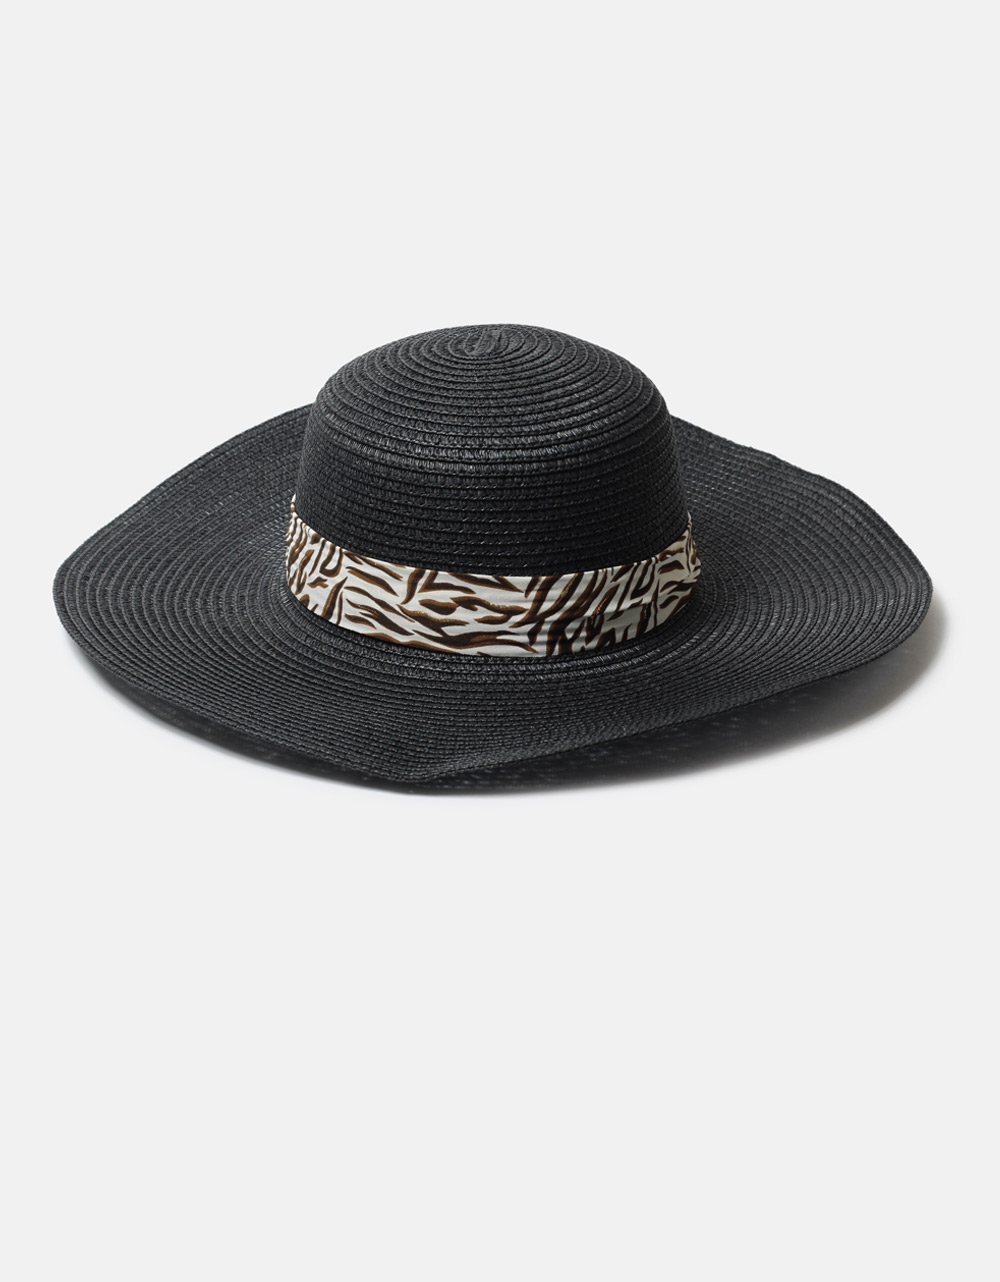 Εικόνα από Ψάθινο καπέλο με κορδέλα και πλατύ γείσο Μαύρο